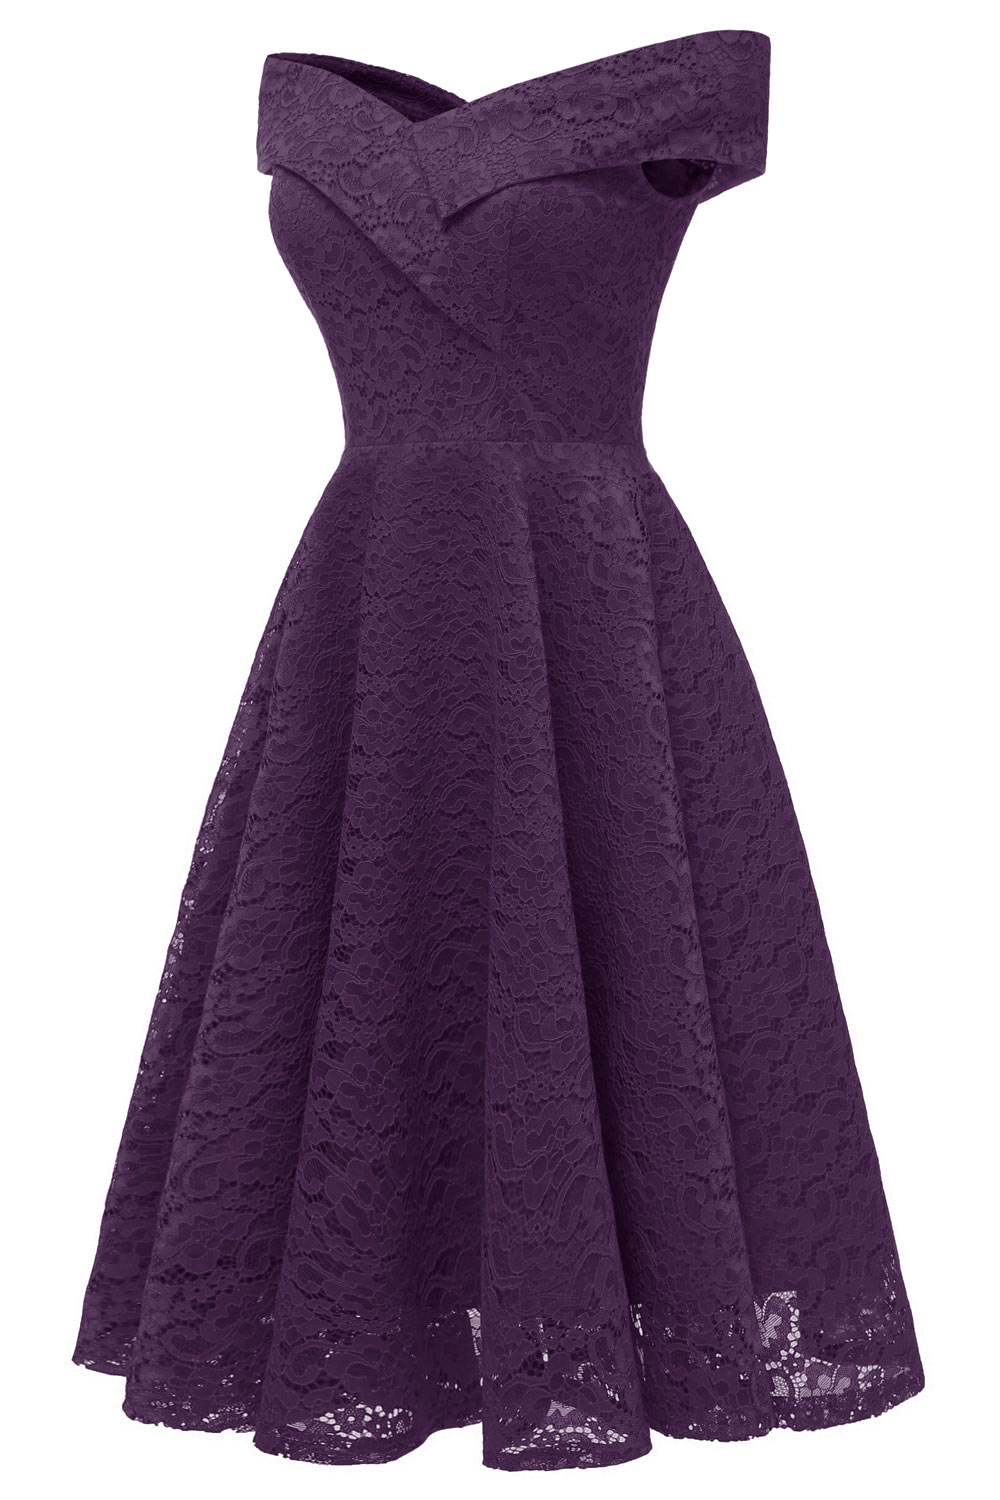 Petite robe violette en dentelle avec épaules dénudées